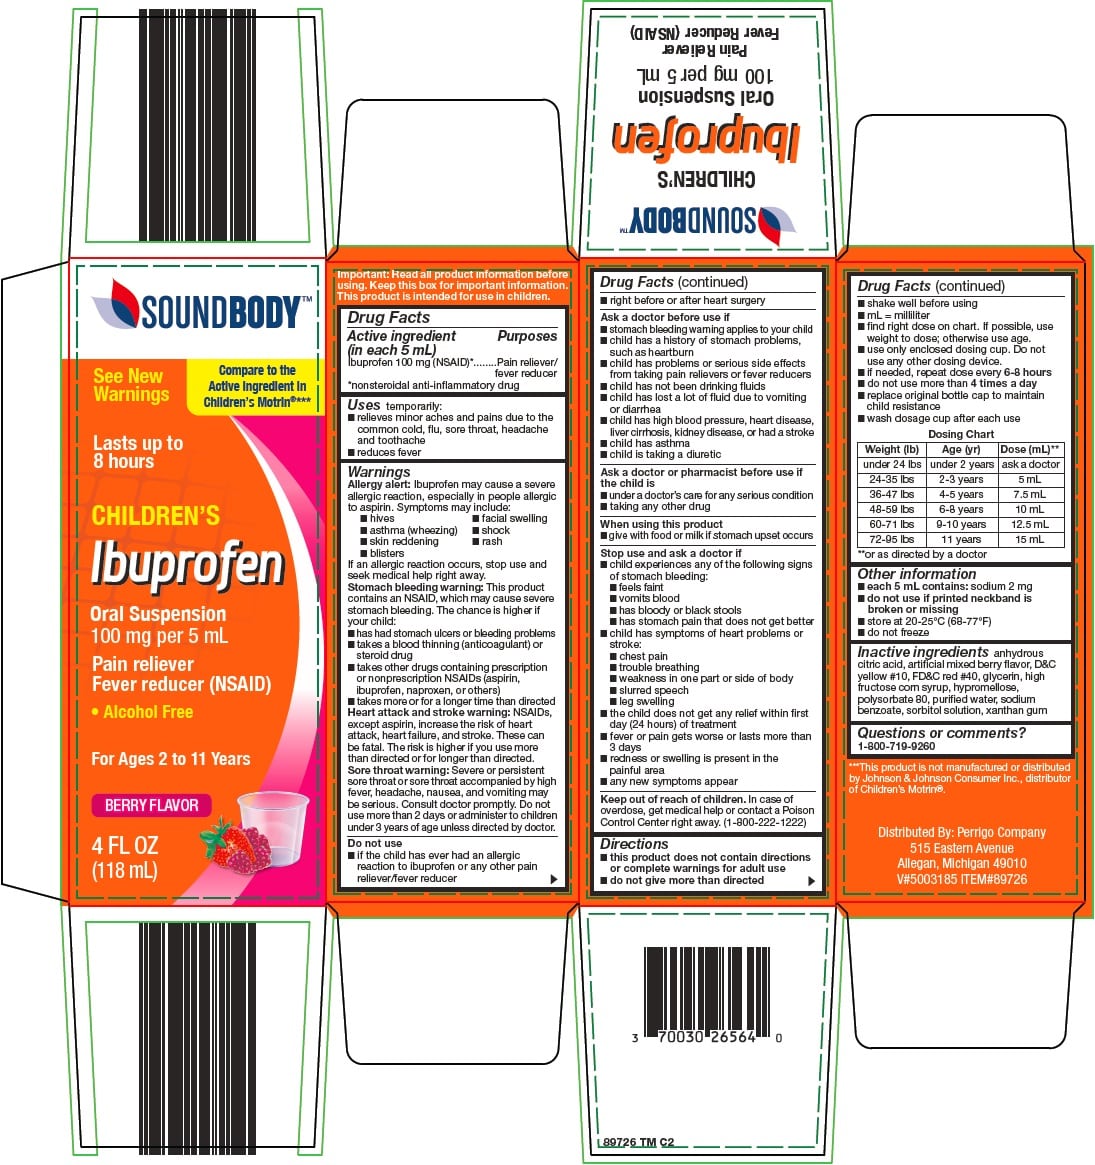 Sound Body Childrens Ibuprofen: Details from the FDA, via OTCLabels.com